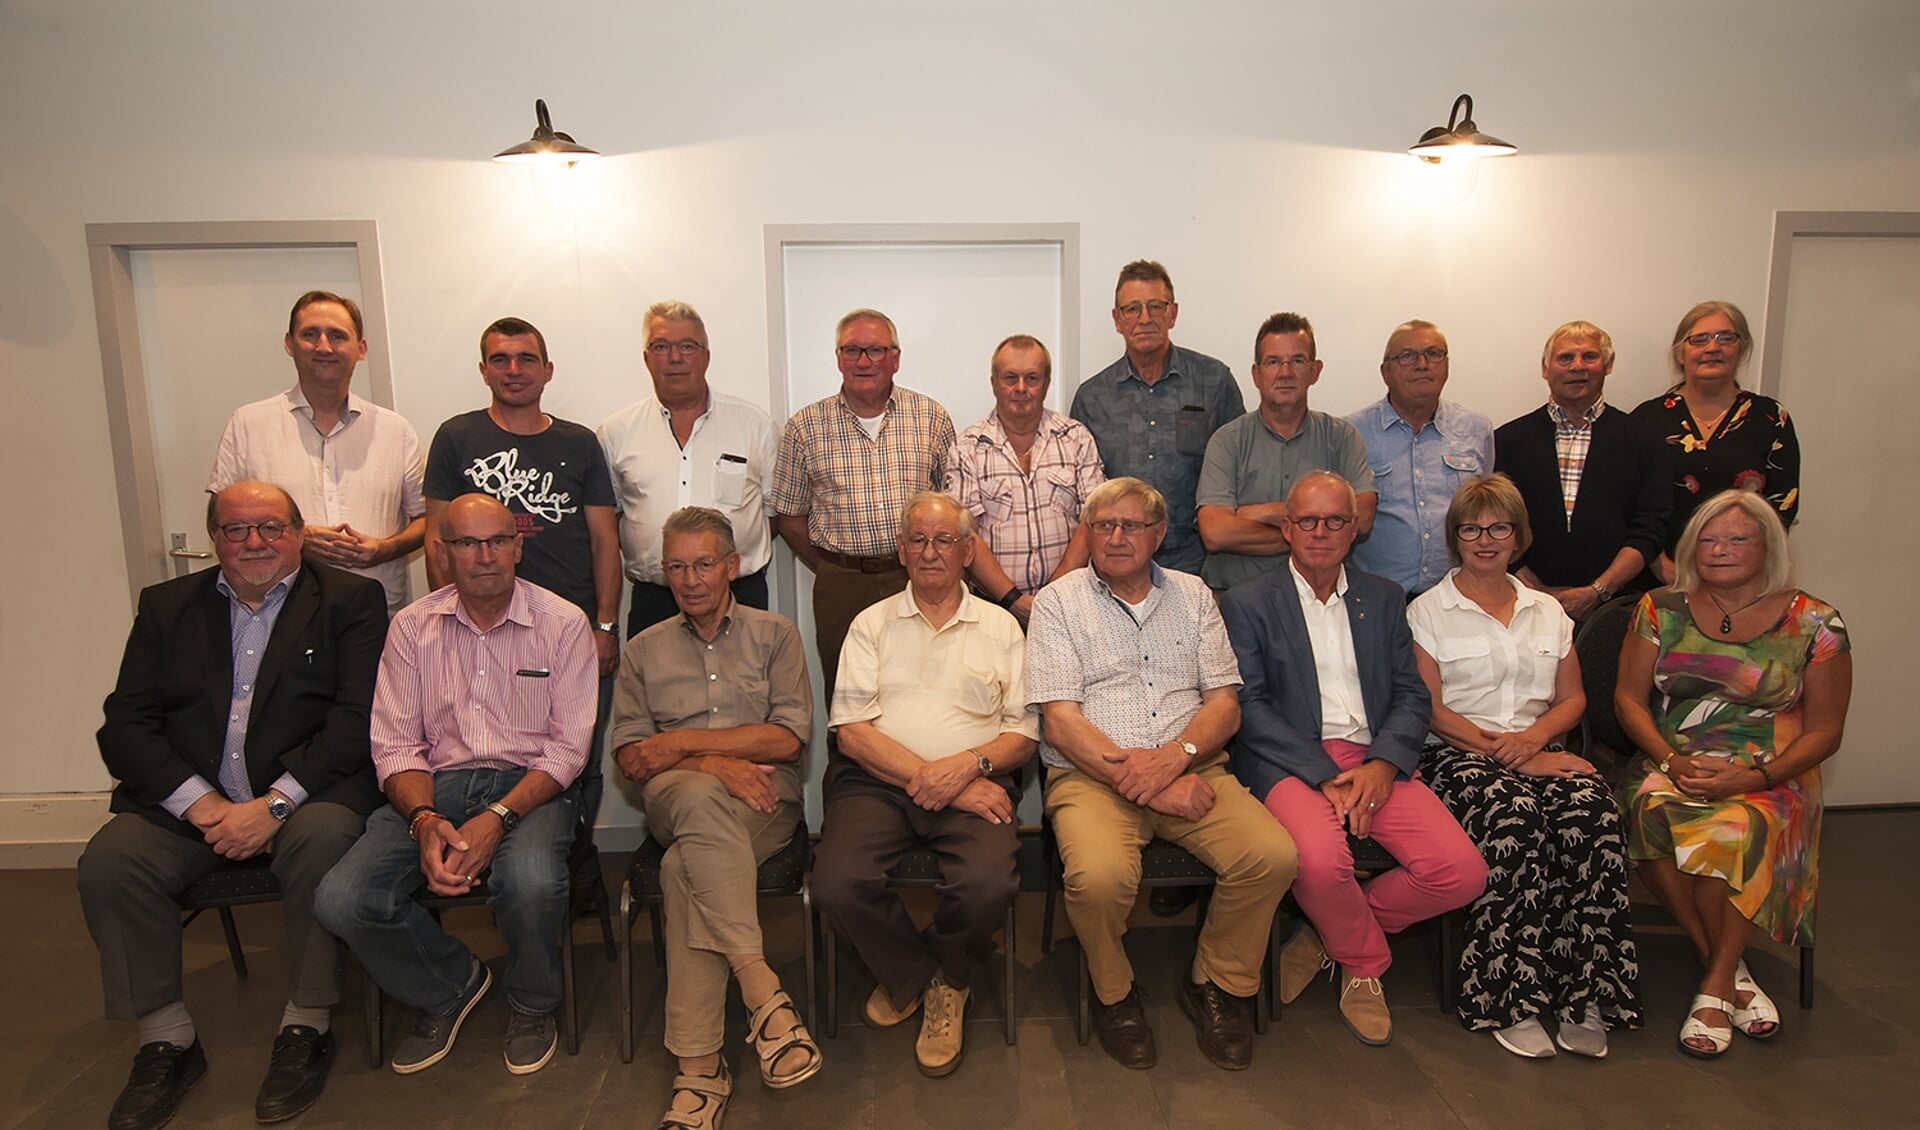 Staand, vlnr: Paul Smink (FNV-bestuurder), Stefaan van Oosterwijk (25), Gerard Ras (50), Marie van Zoggel (50), Eddy Kouwenberg (40), Teun van Hoof (50), Huub de Bresser (40), Hans Gruijters (40), Jan Verbakel (40), Juul Douze (25). Zittend vlnr: Frans Biemans (40), Piet Smits (50), Grist van de Hoo